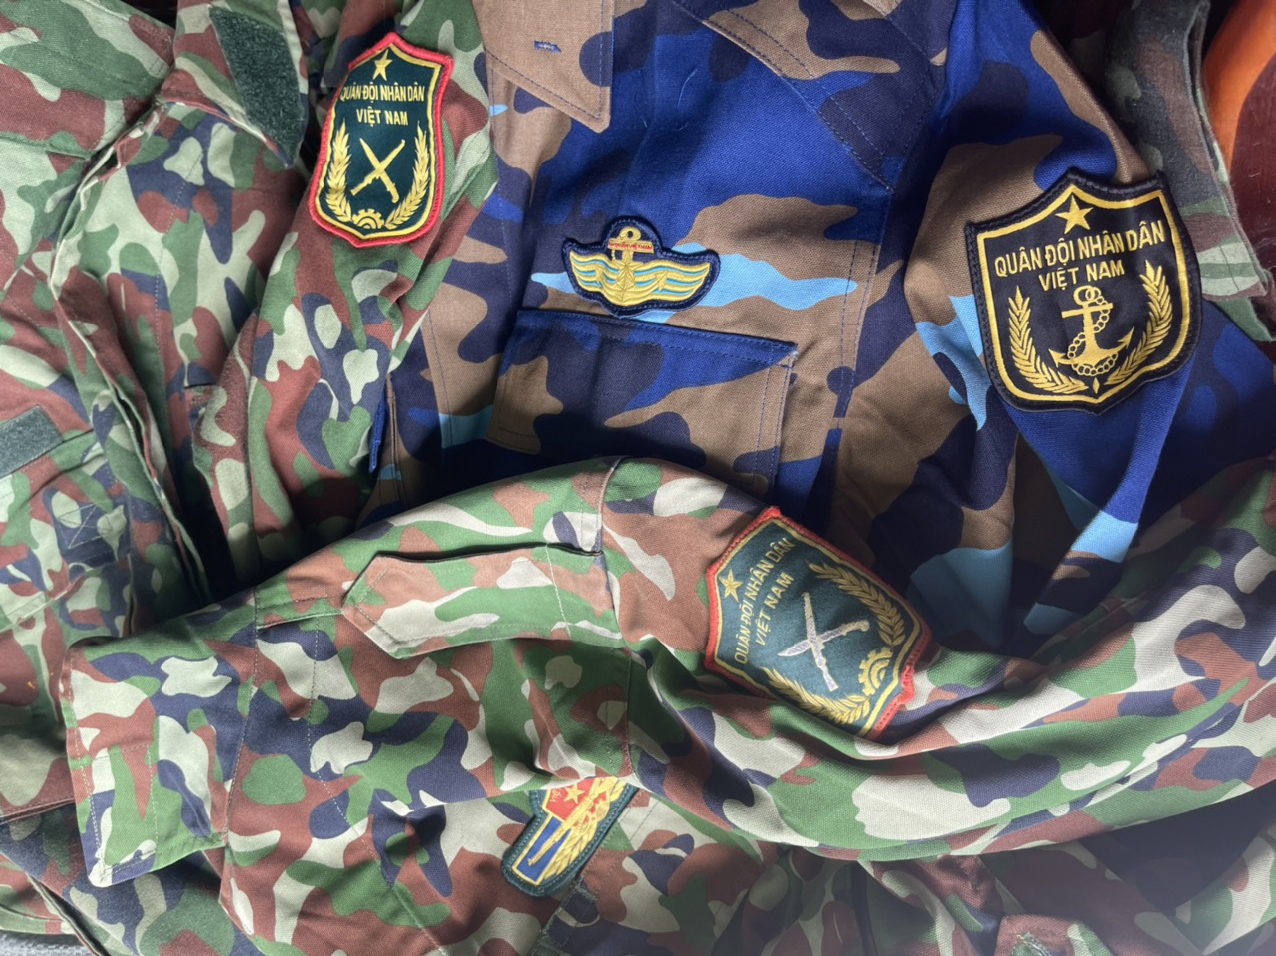 Quần áo, quân tư trang quân đội được phát hiện tại cửa hàng